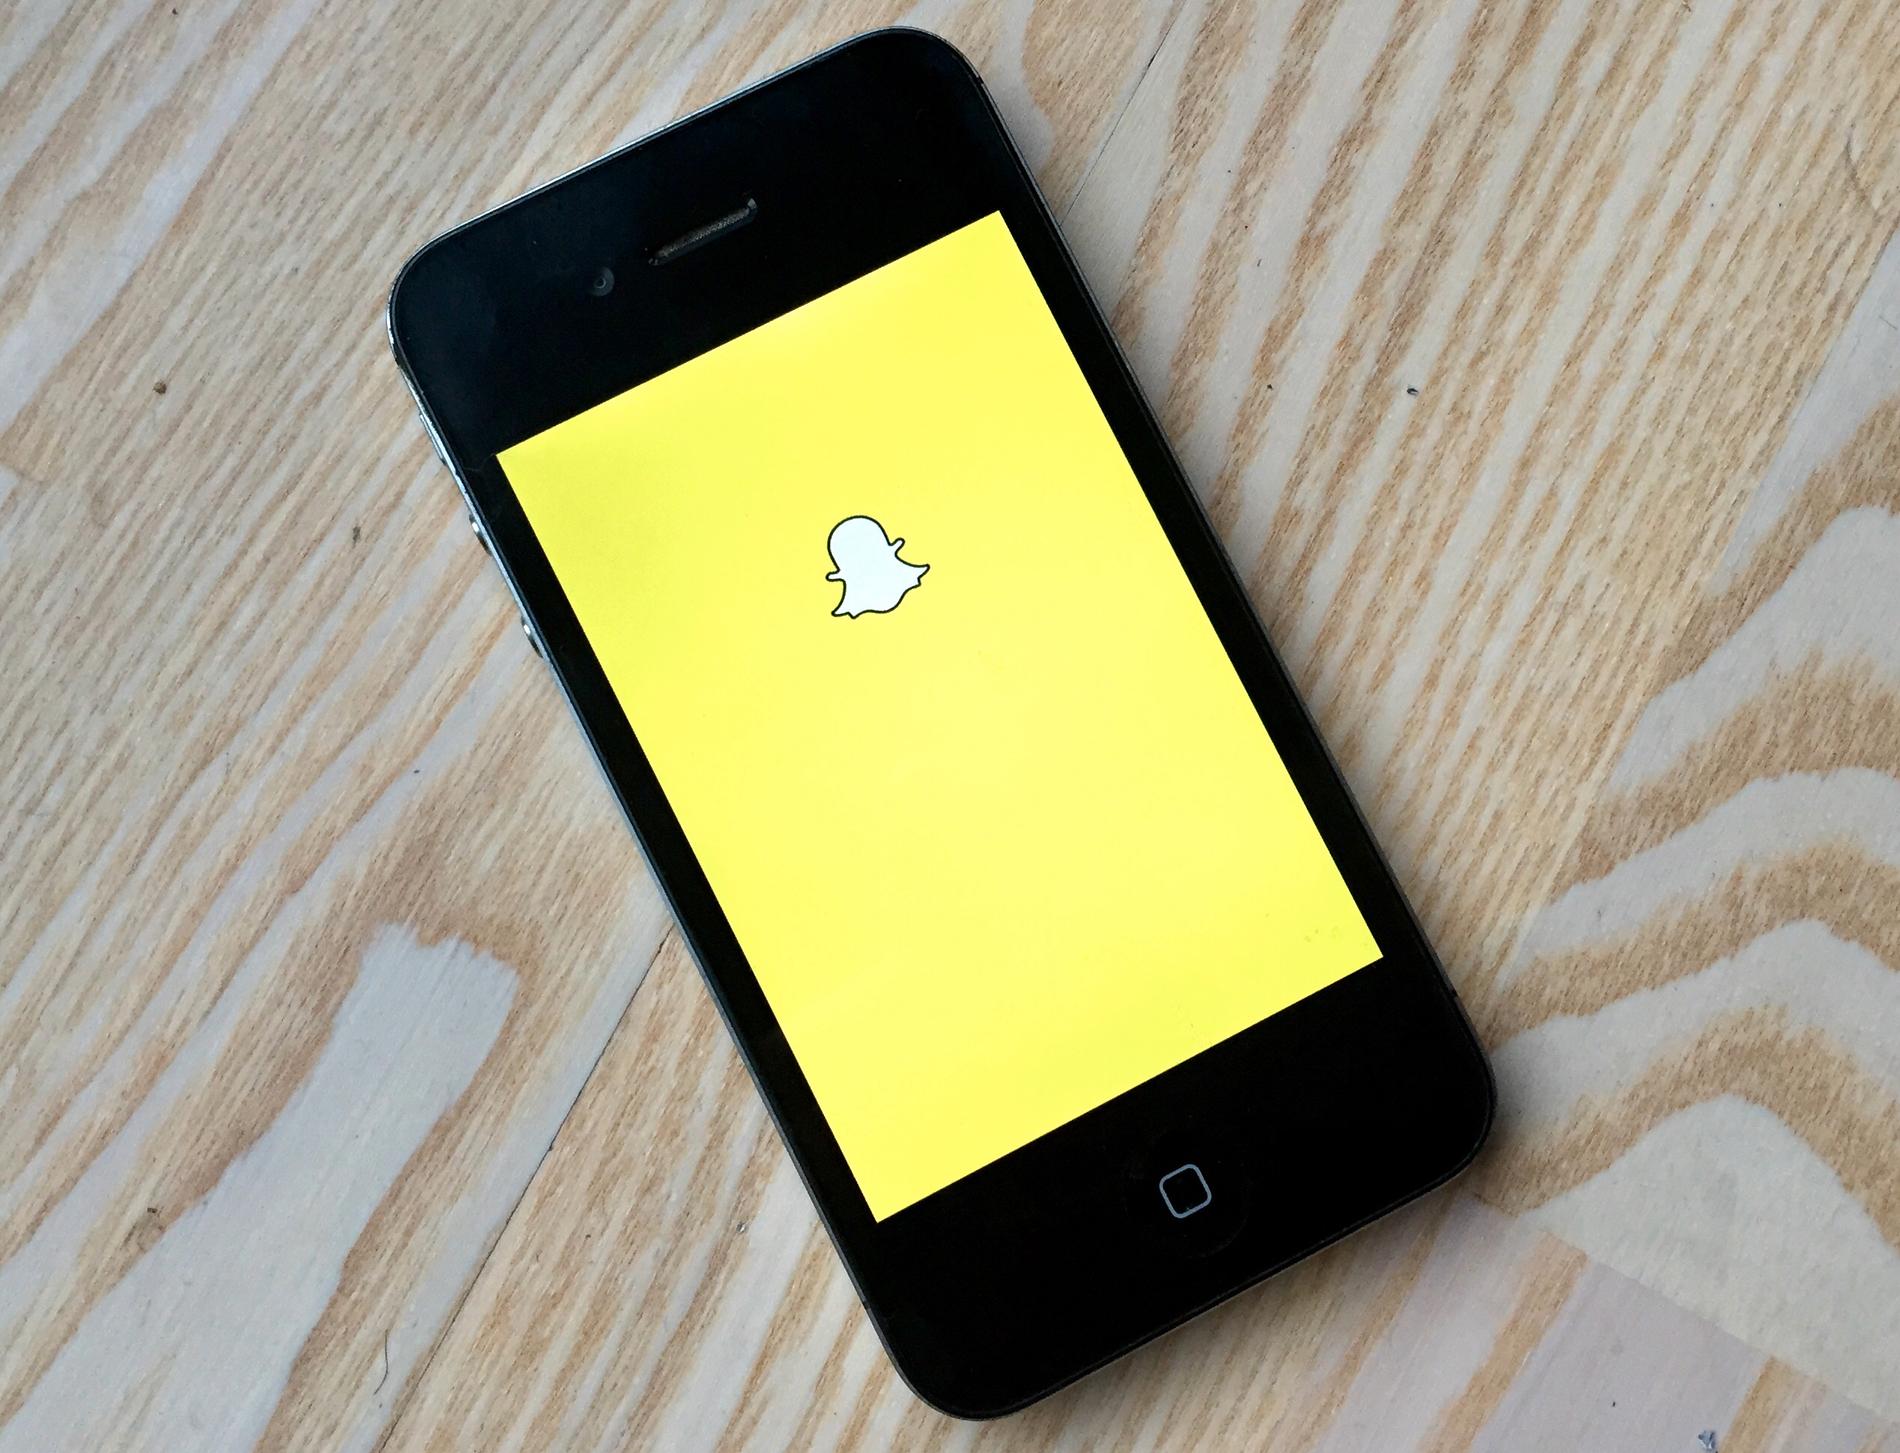 Rundt 1,6 millioner mennesker bruker Snapchat i Norge. Foto: AP/Jae C. Hong